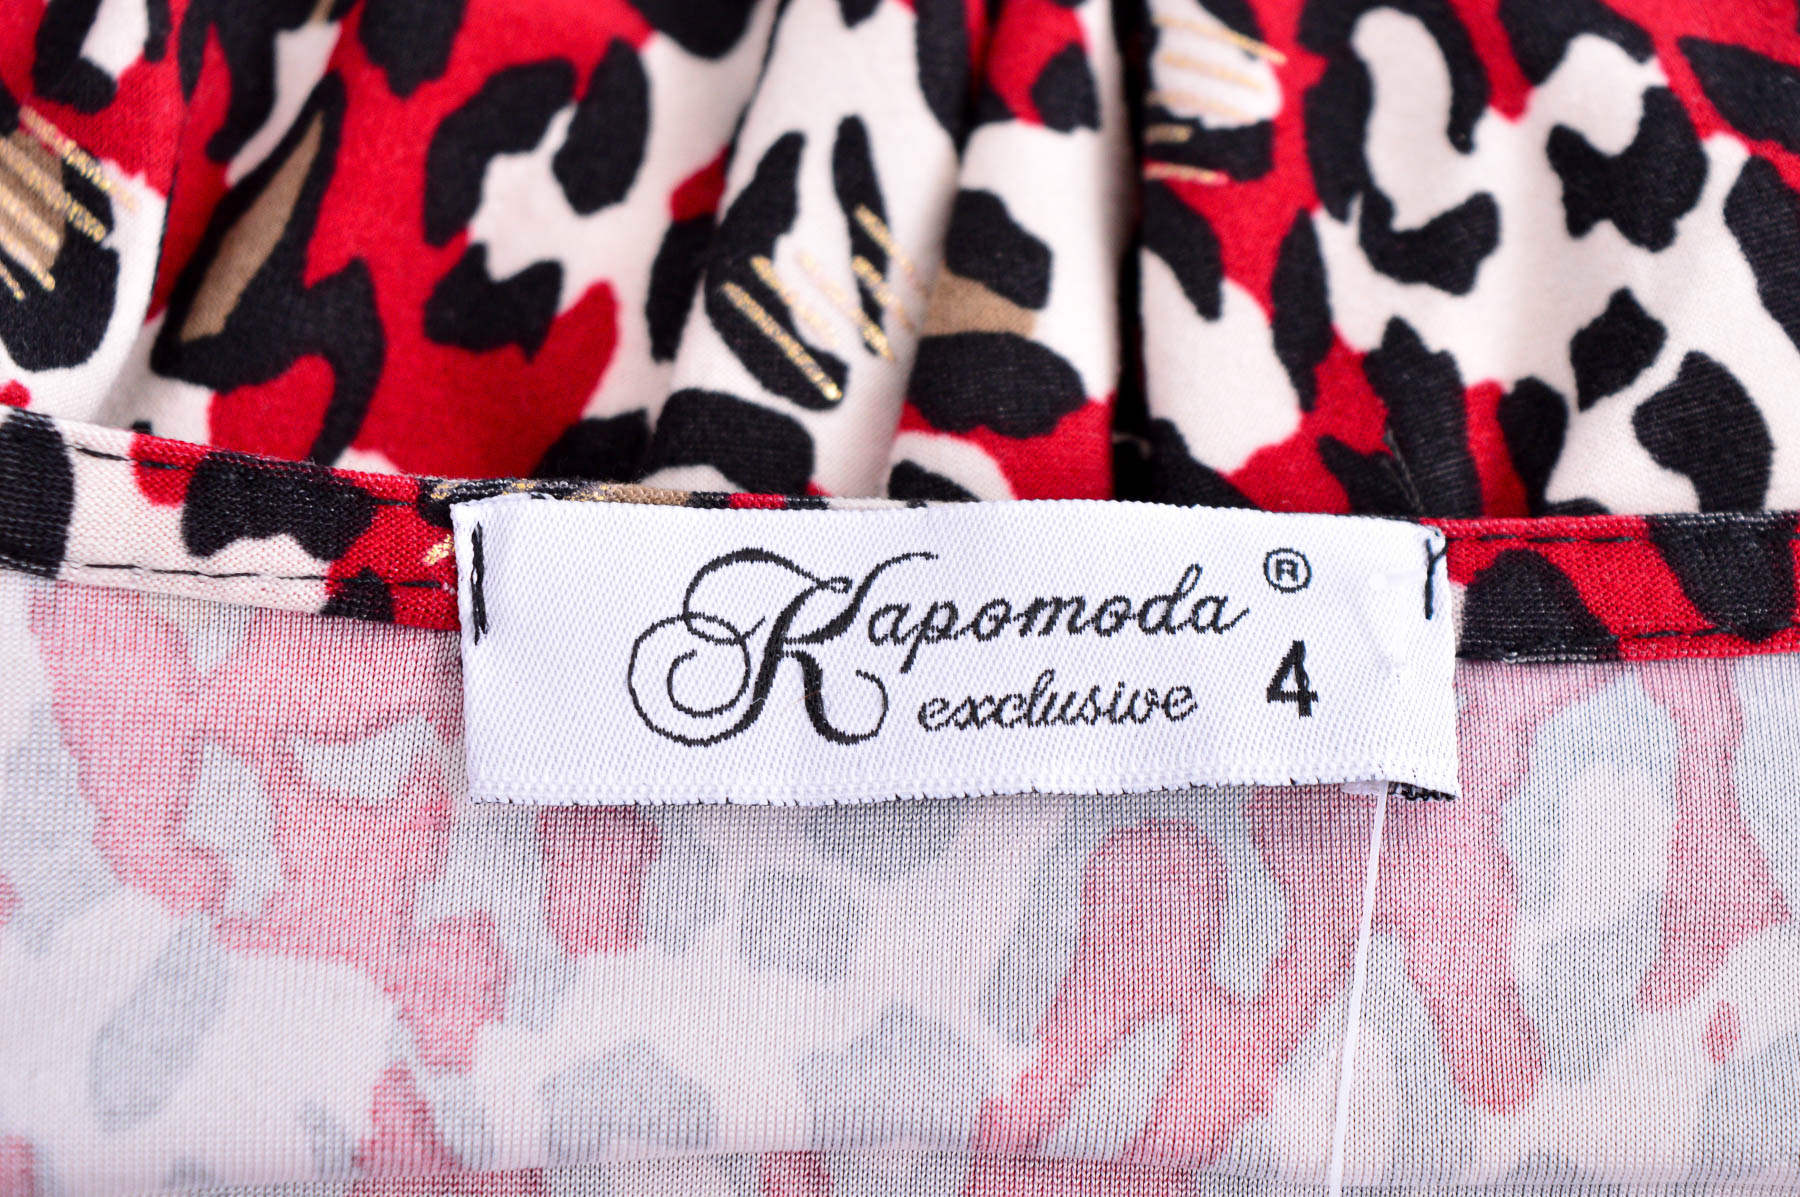 Γυναικεία μπλούζα - Kapomoda - 2